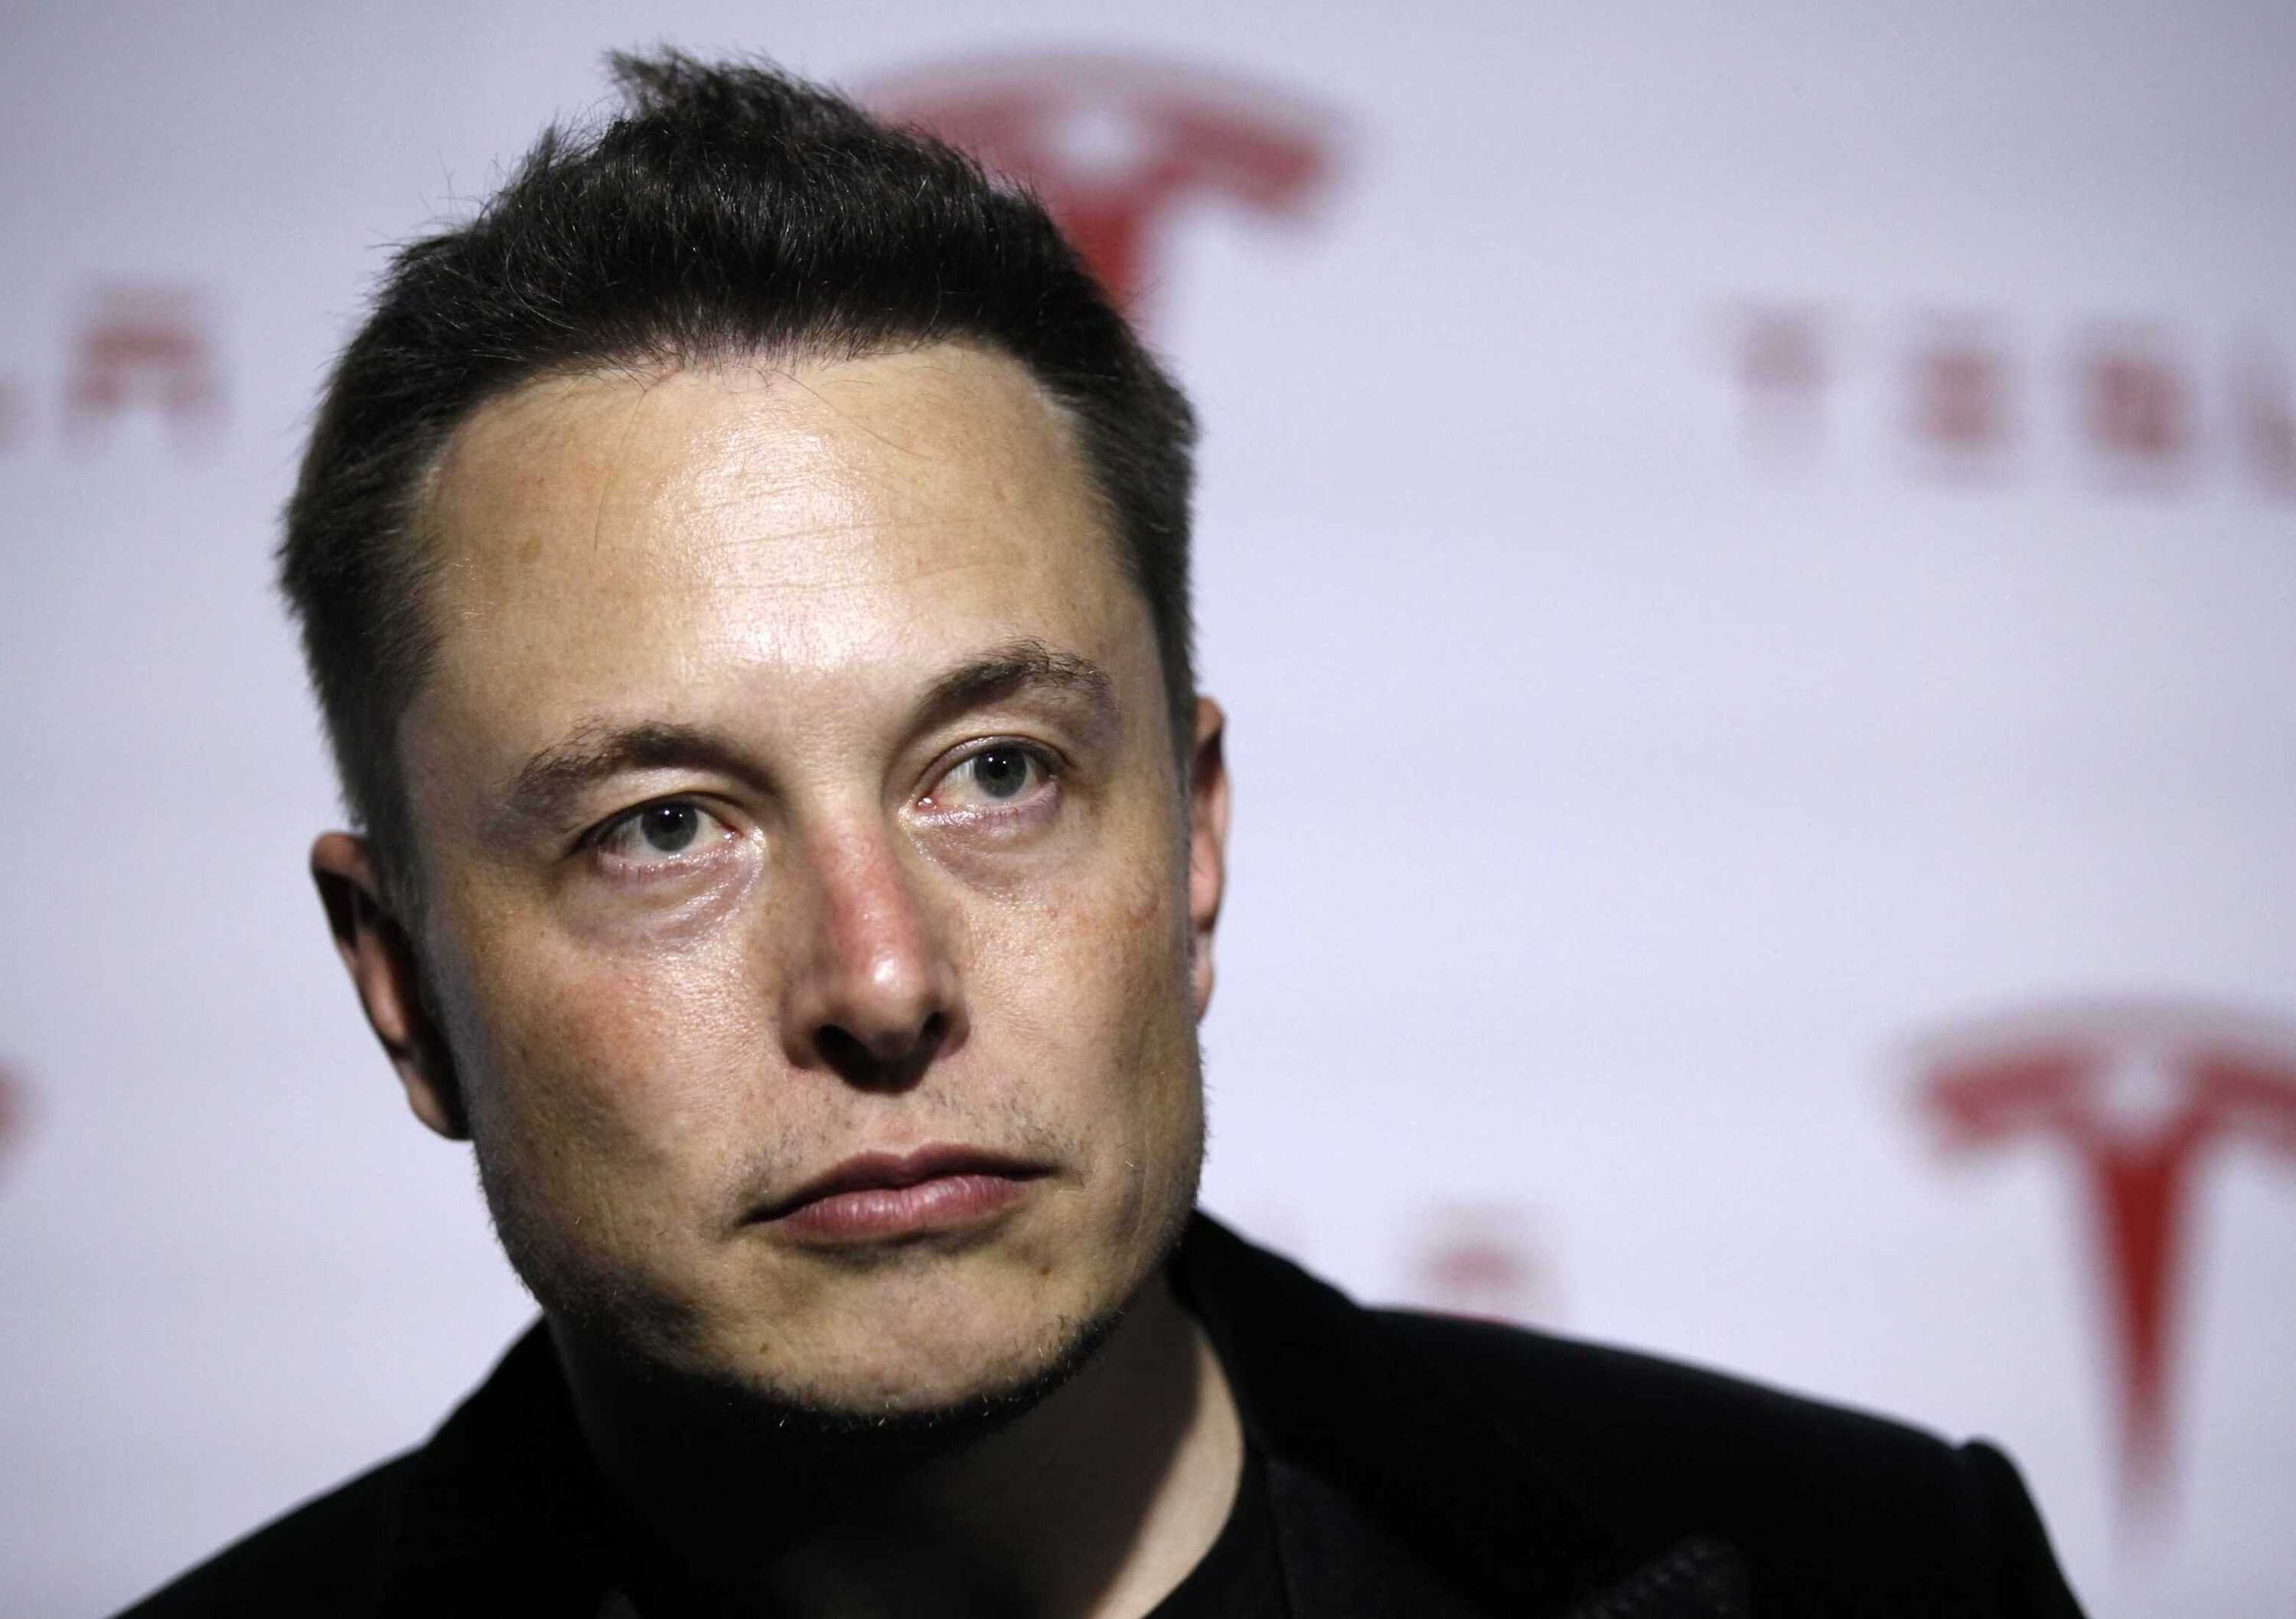 Elon Musk vuole riaprire la fabbrica di Fremont: &laquo;Pronto a farmi arrestare&raquo;